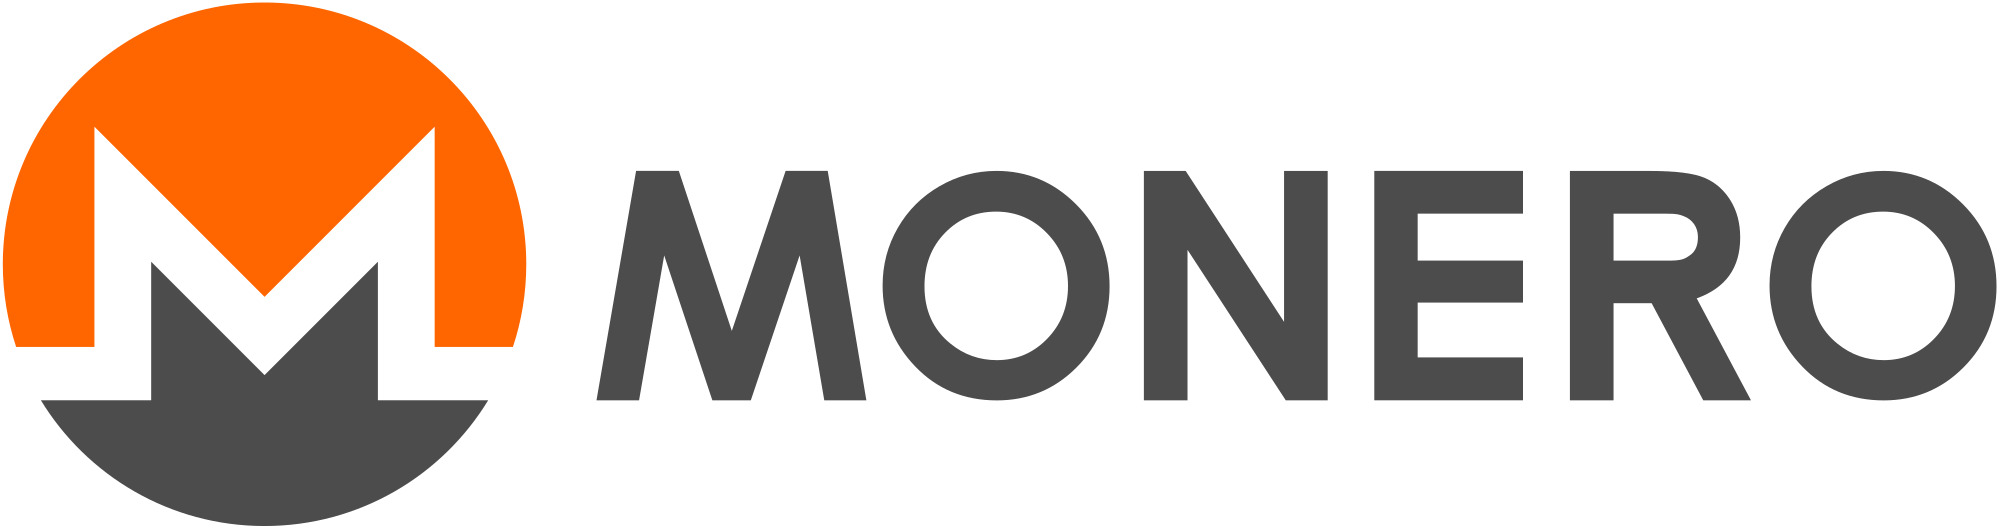 Monero Logo icons